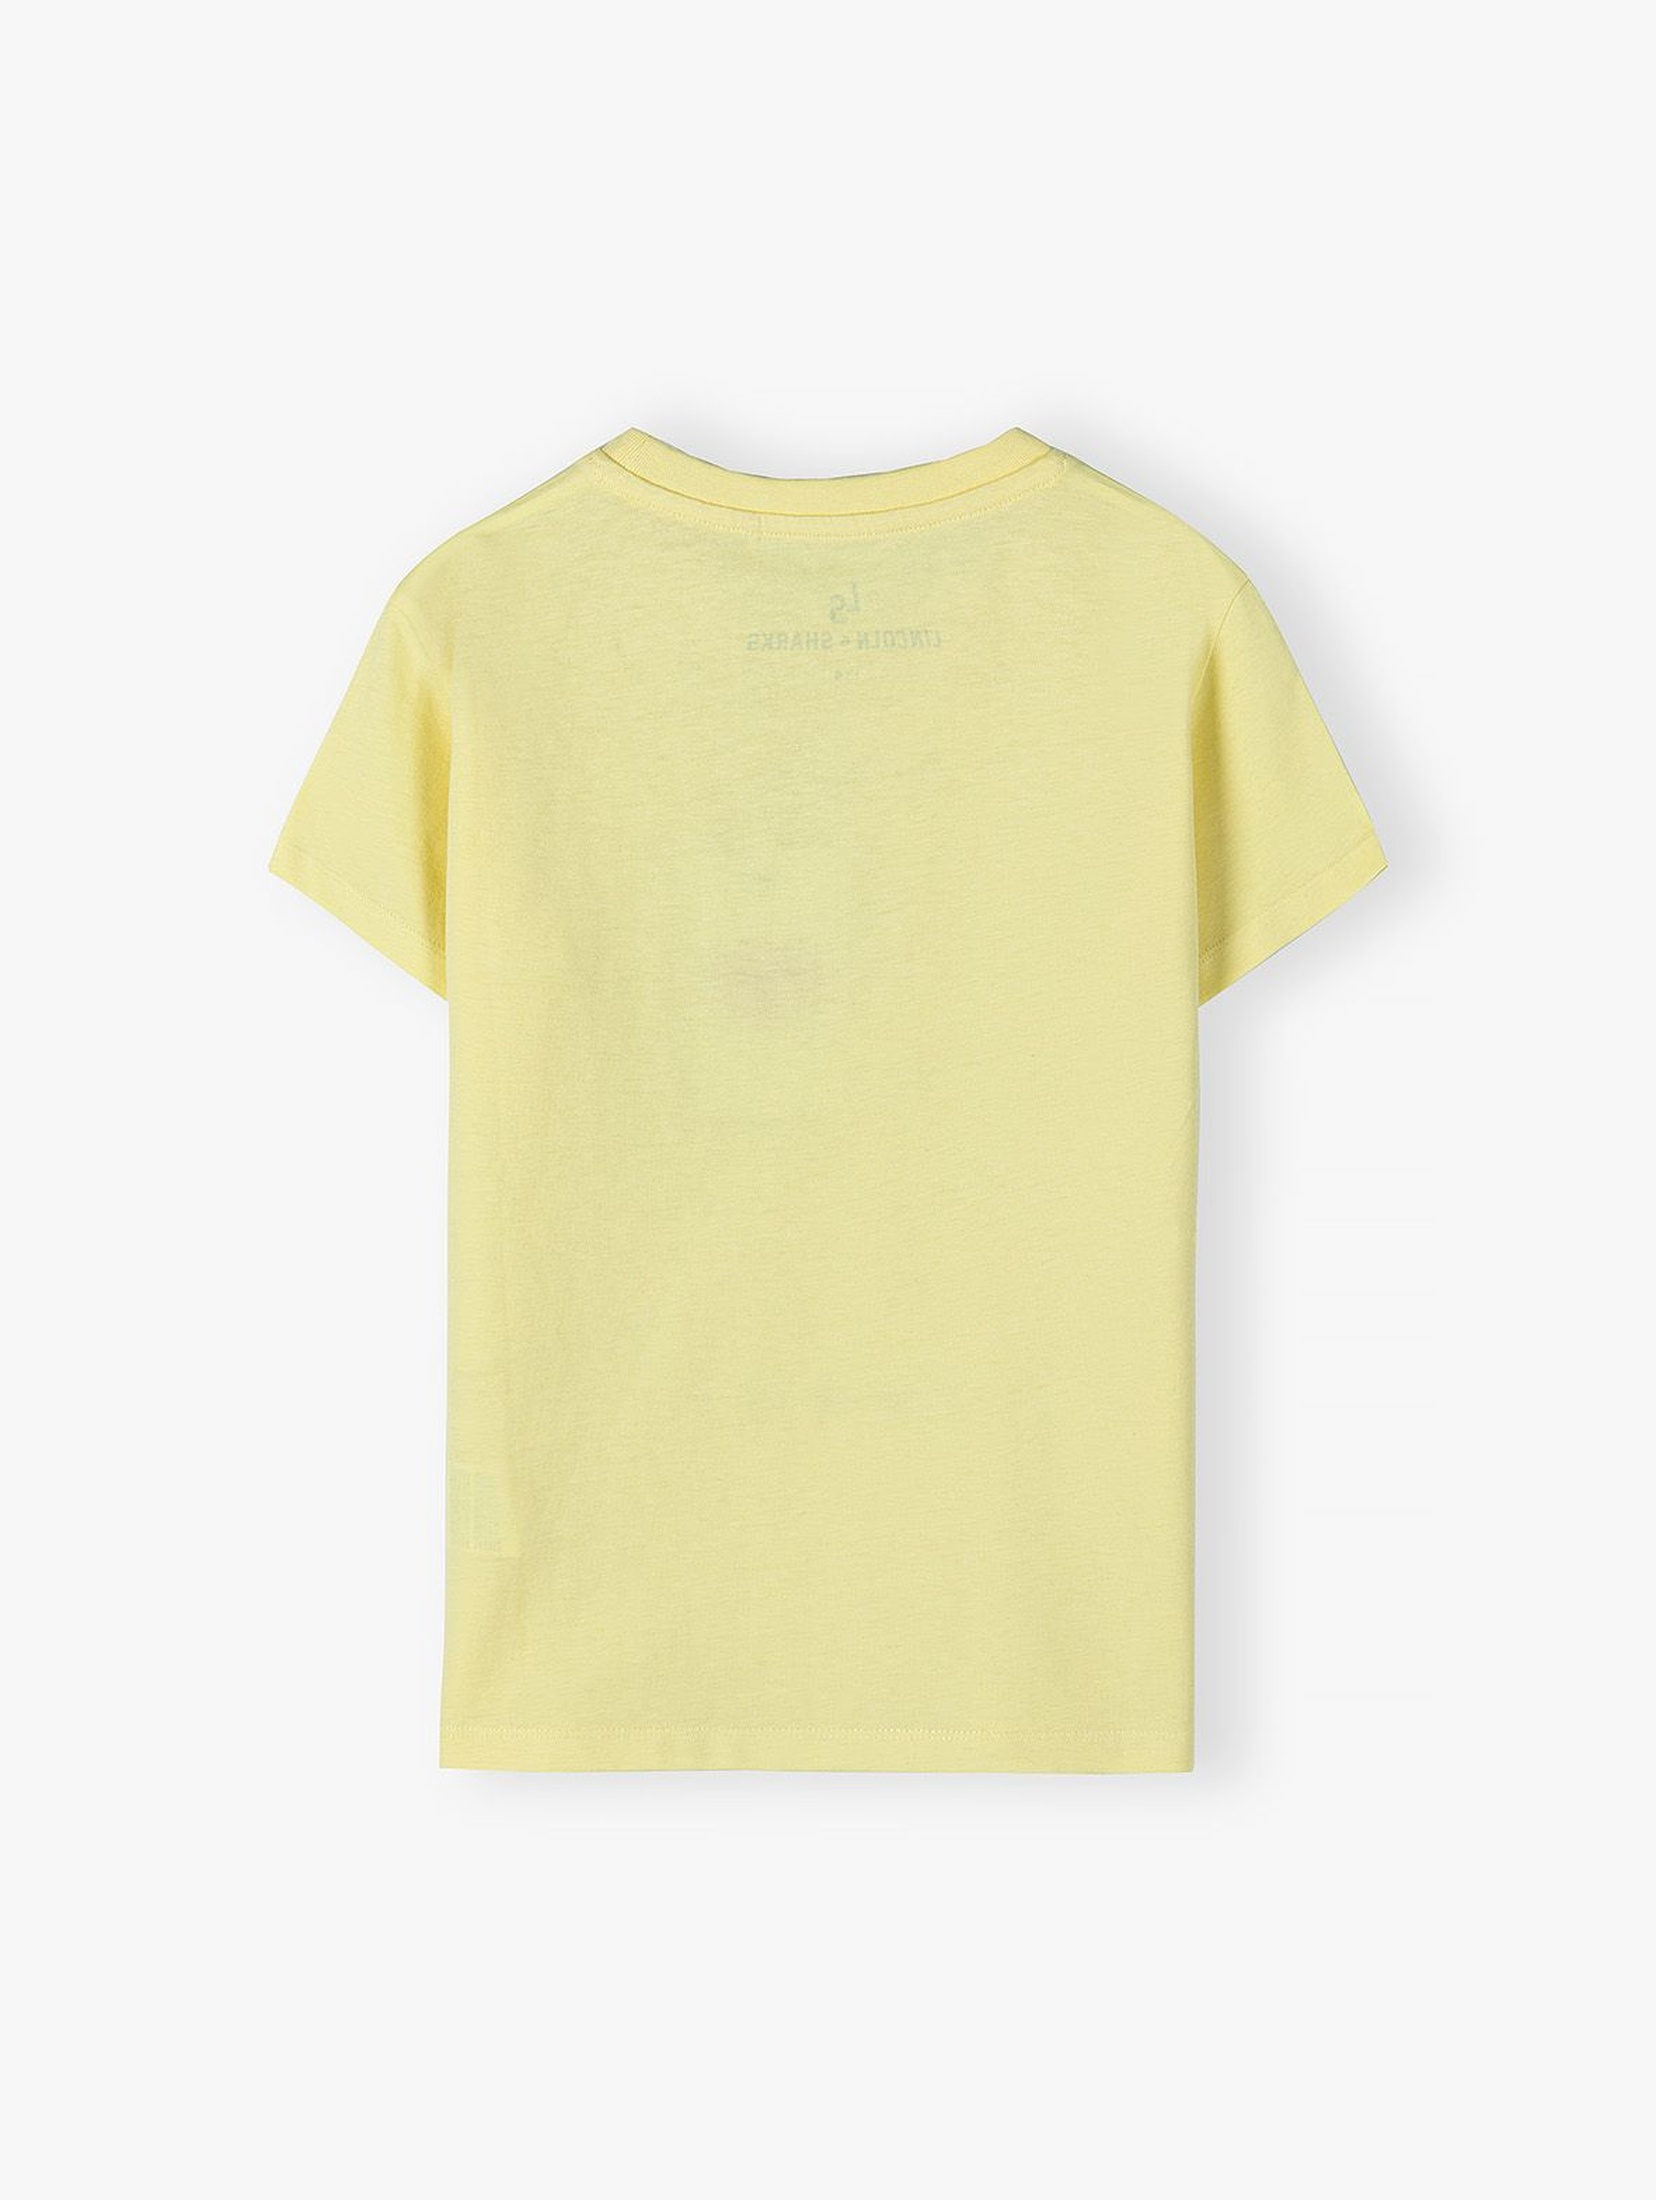 Bawełniany T-shirt dla chłopca żółty